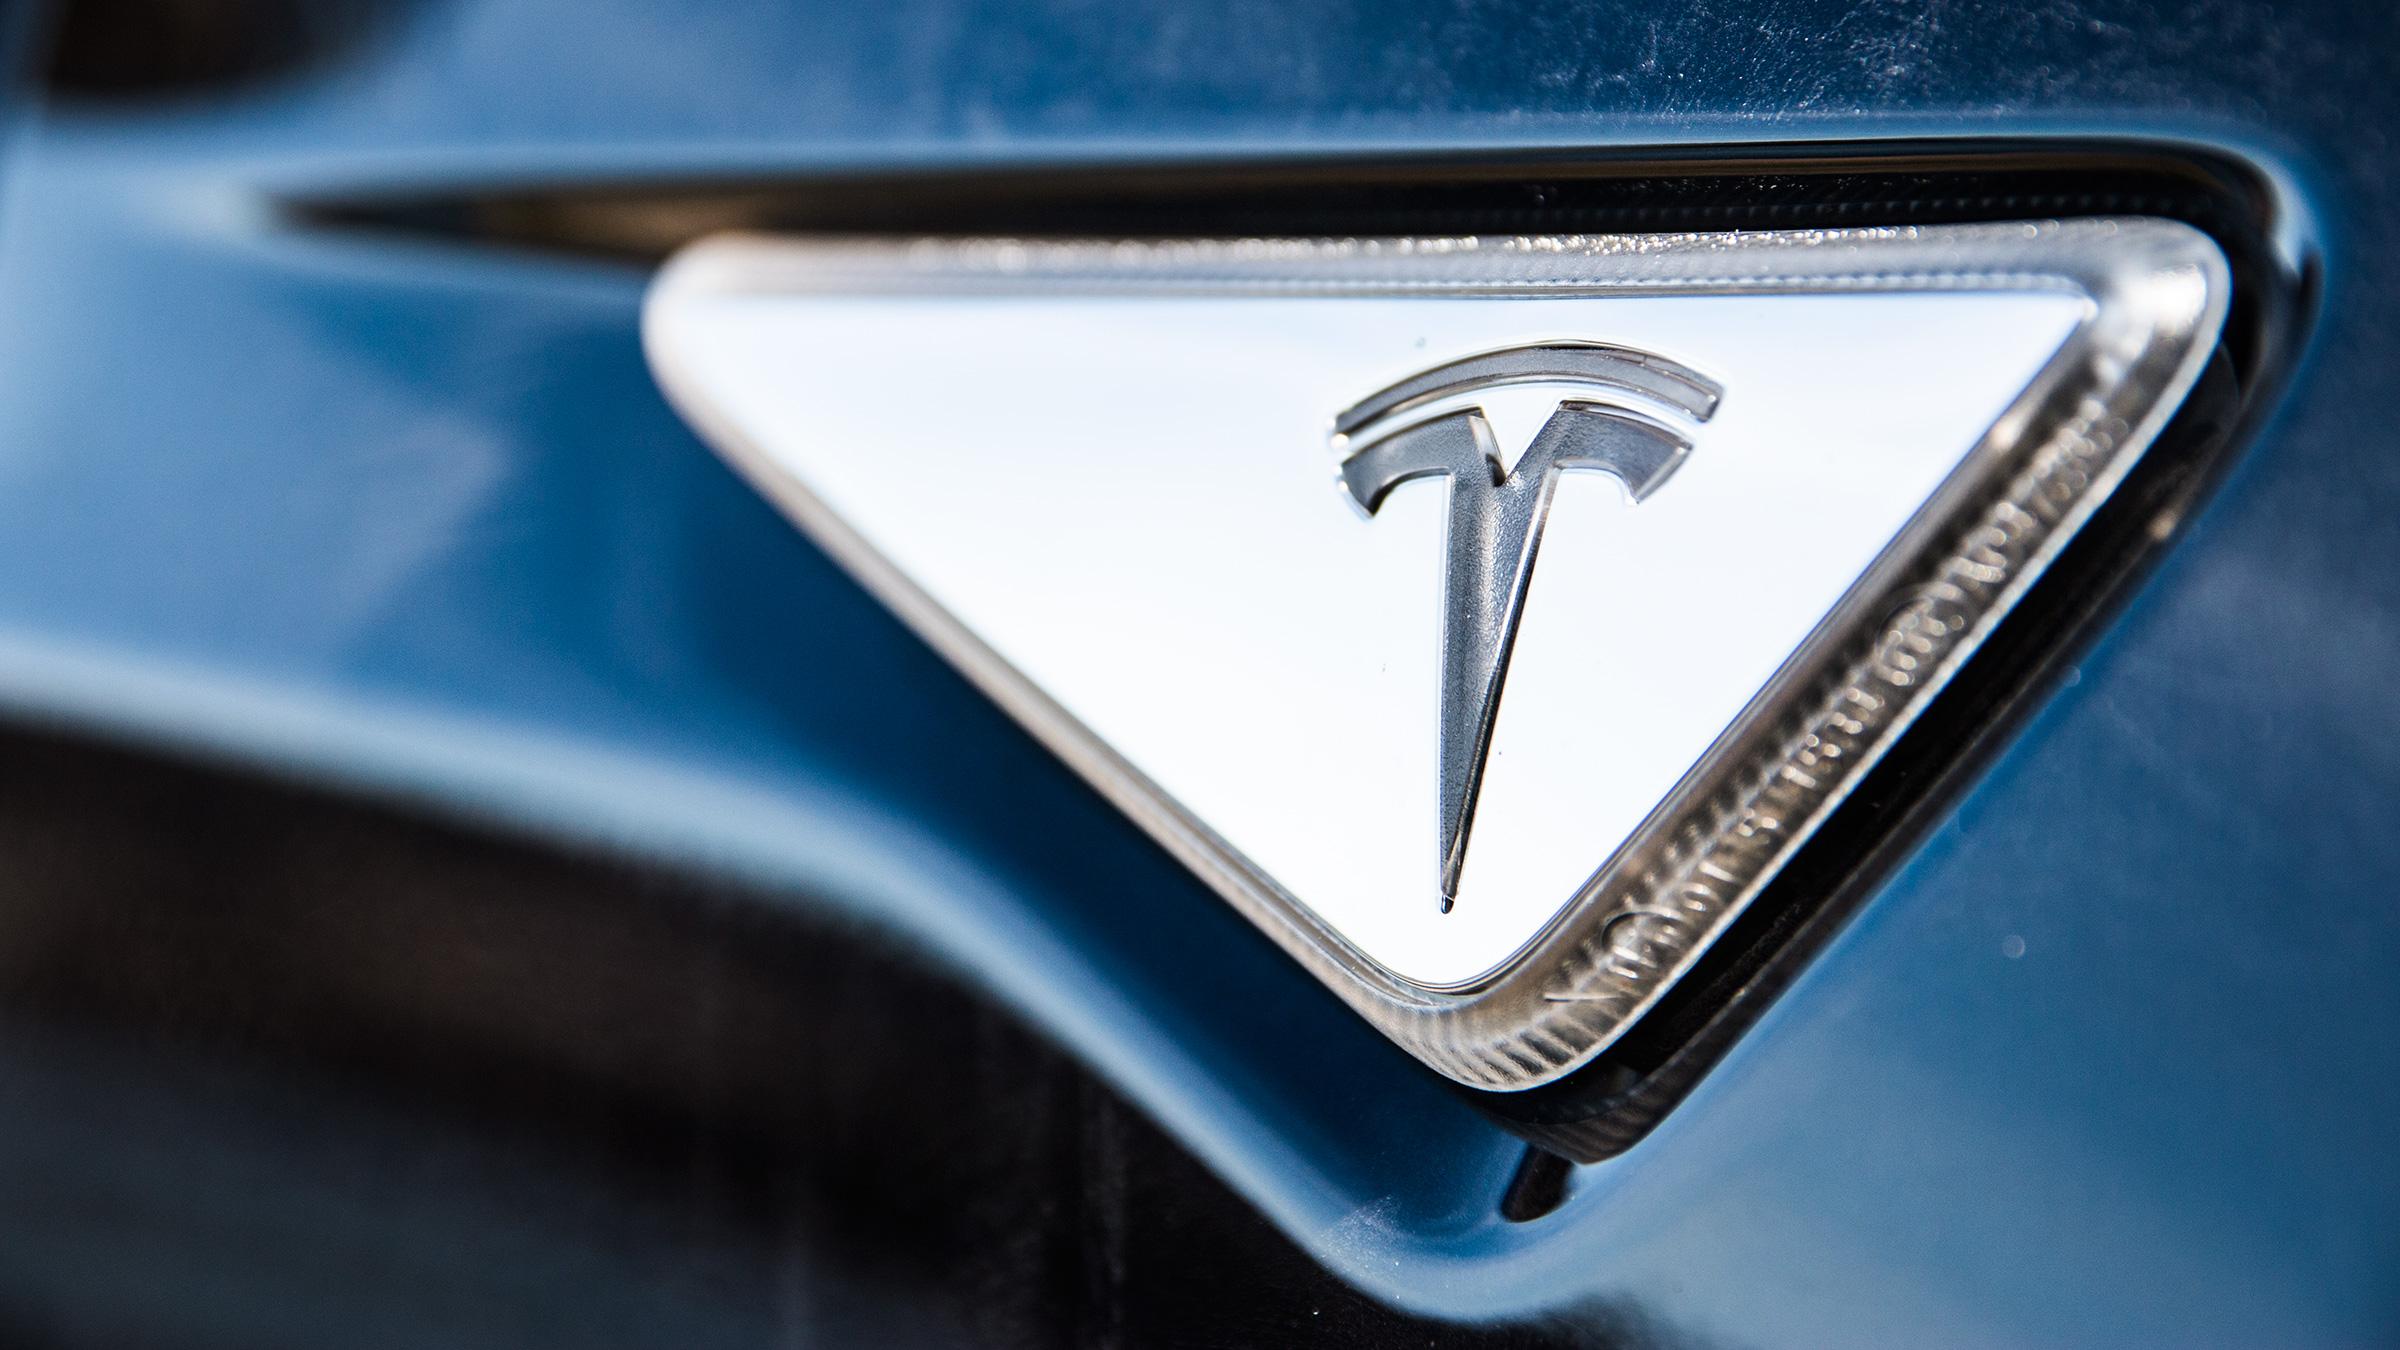 Tesla-logoen går igjen på omtrent hver eneste lille bit av bilen. Selv blinklysene kommer dekorert med det særegne T-merket.Foto: Varg Aamo, Hardware.no